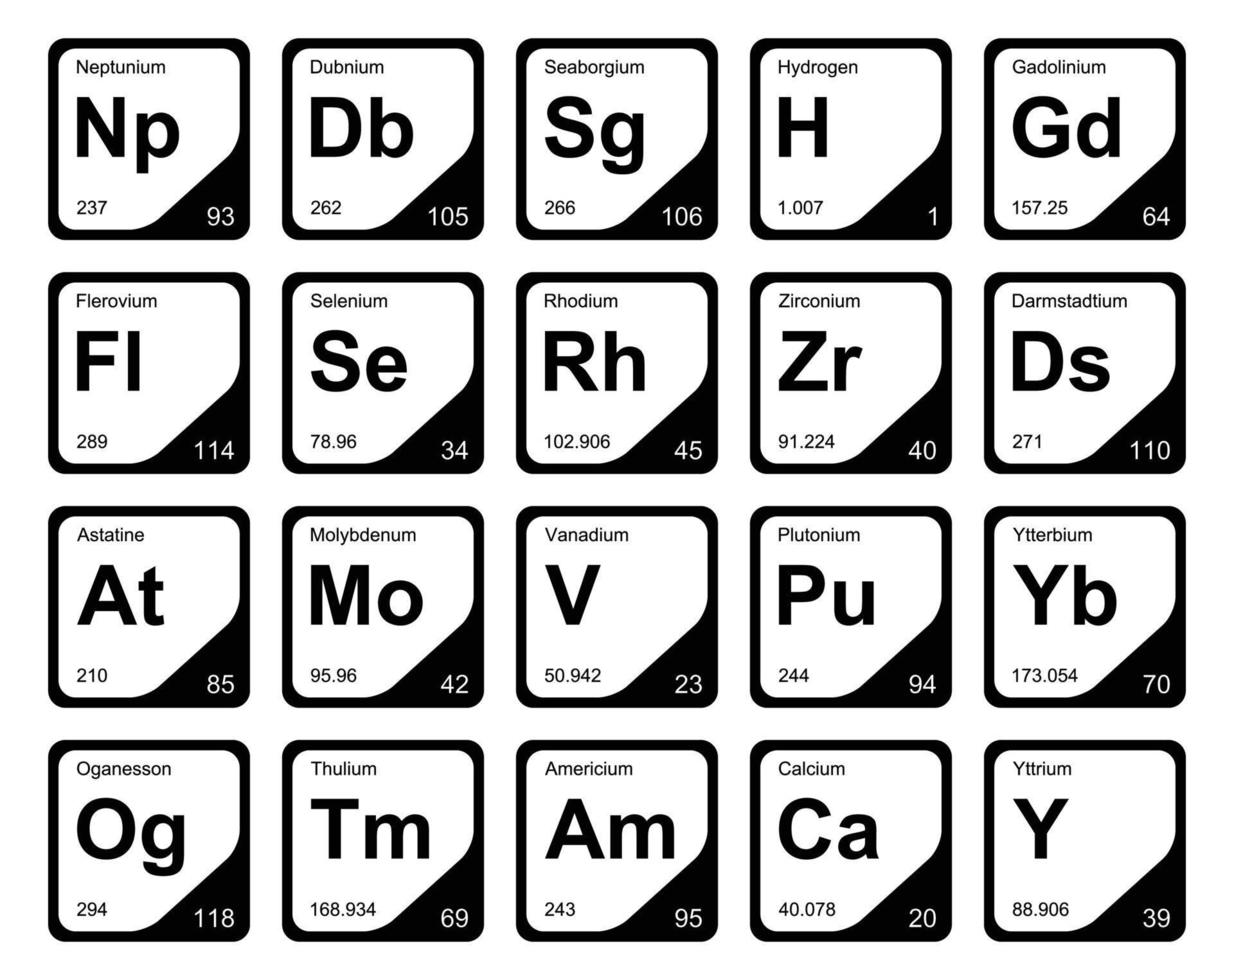 diseño de paquete de iconos de 20 tablas preiodicas de los elementos vector